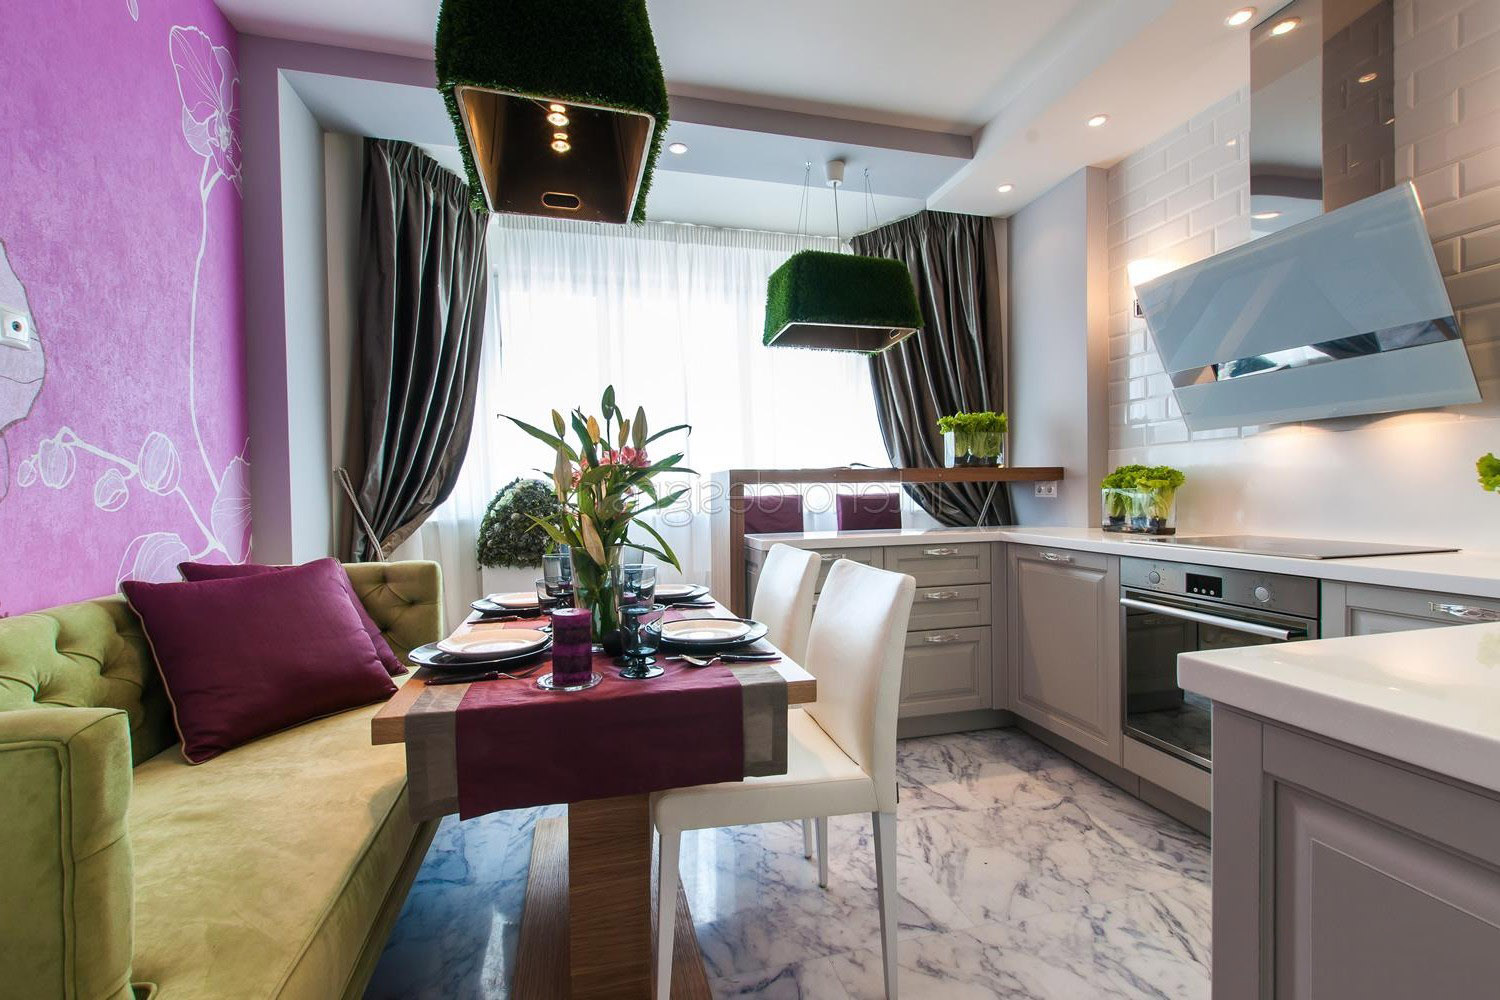 Кухня-гостиная 20 кв. м: особенности дизайна, планировки и примеры проектов